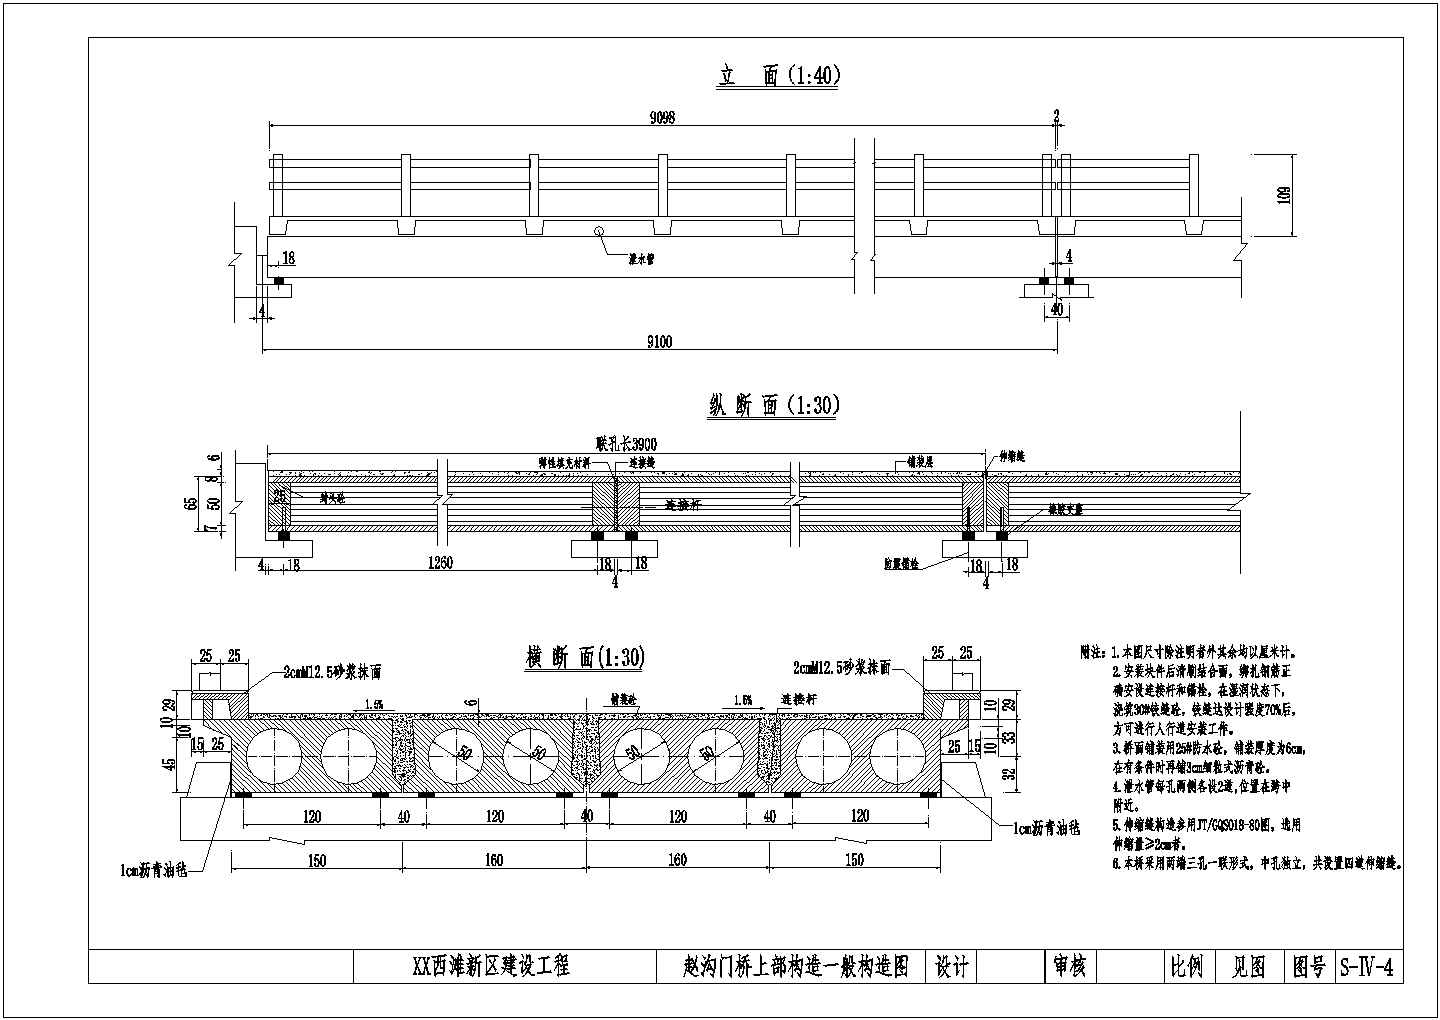 赵沟门漫水桥 全长108.64米漫水桥施工图设计【小型 公路桥】